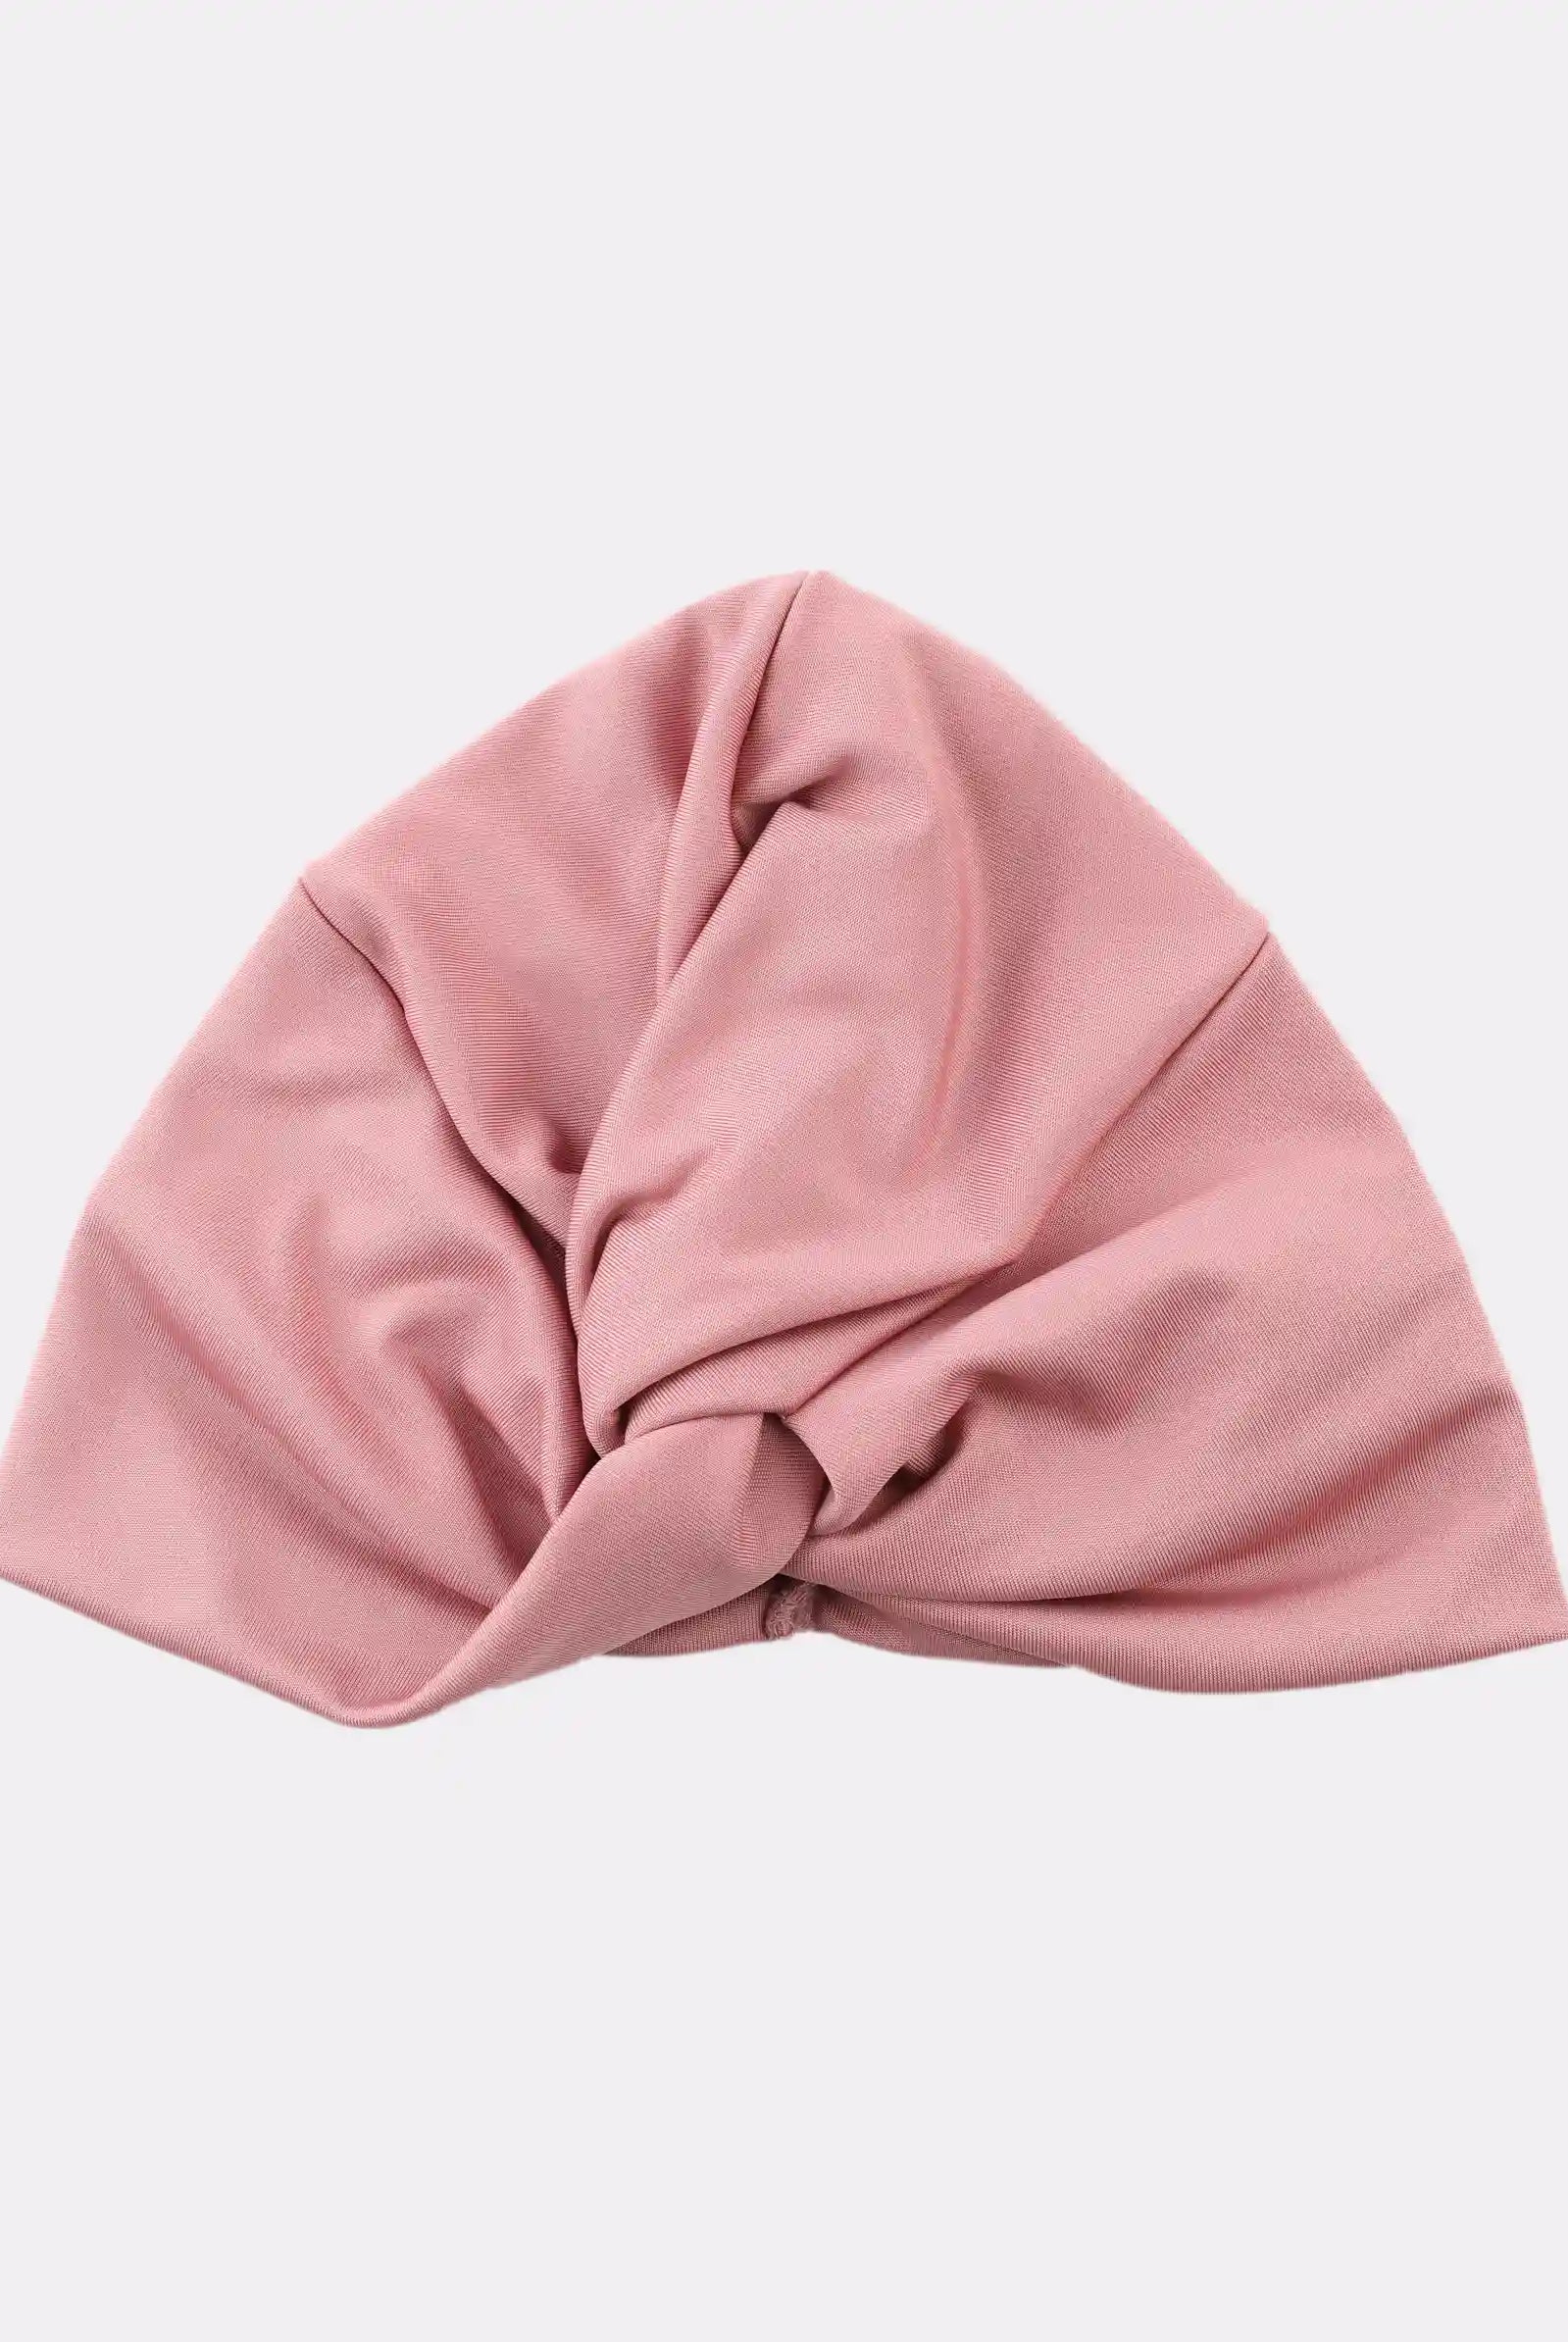 pink turban women